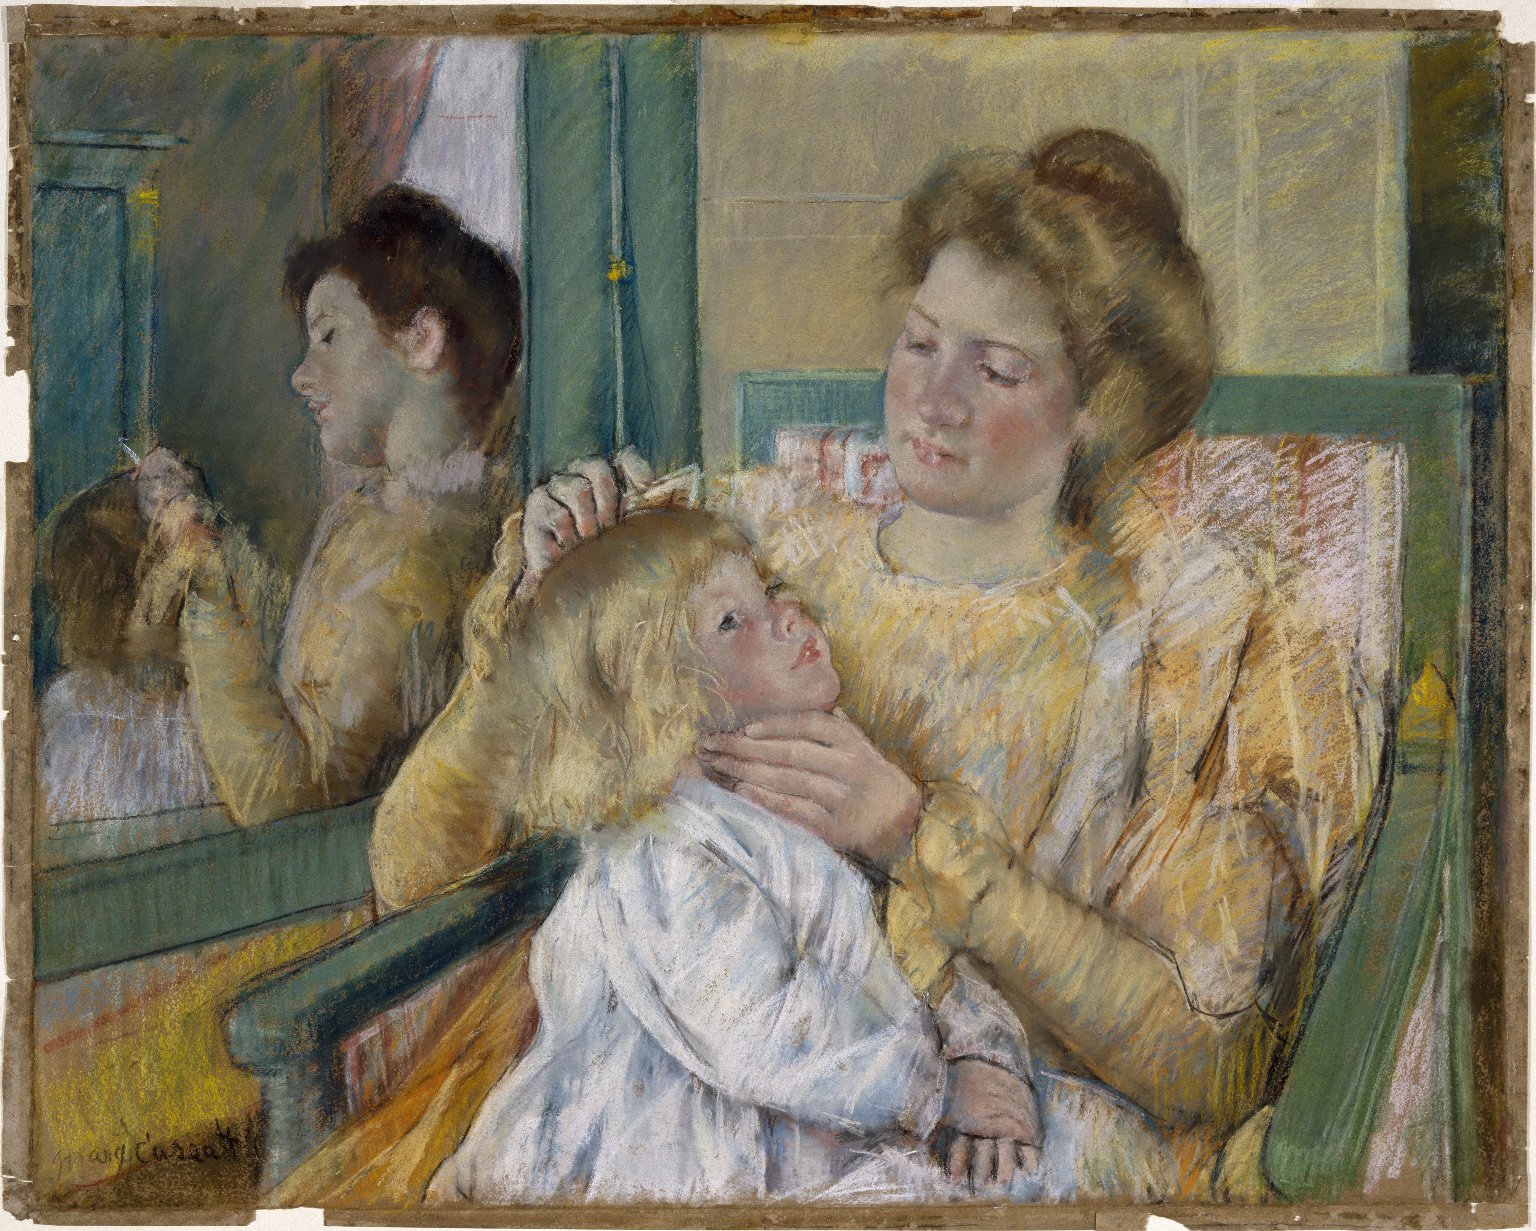 Mutter, die das Haar ihres Kindes kämmt. by Mary Cassatt - 1901 - 64.1 x 80.3 cm Brooklyn Museum